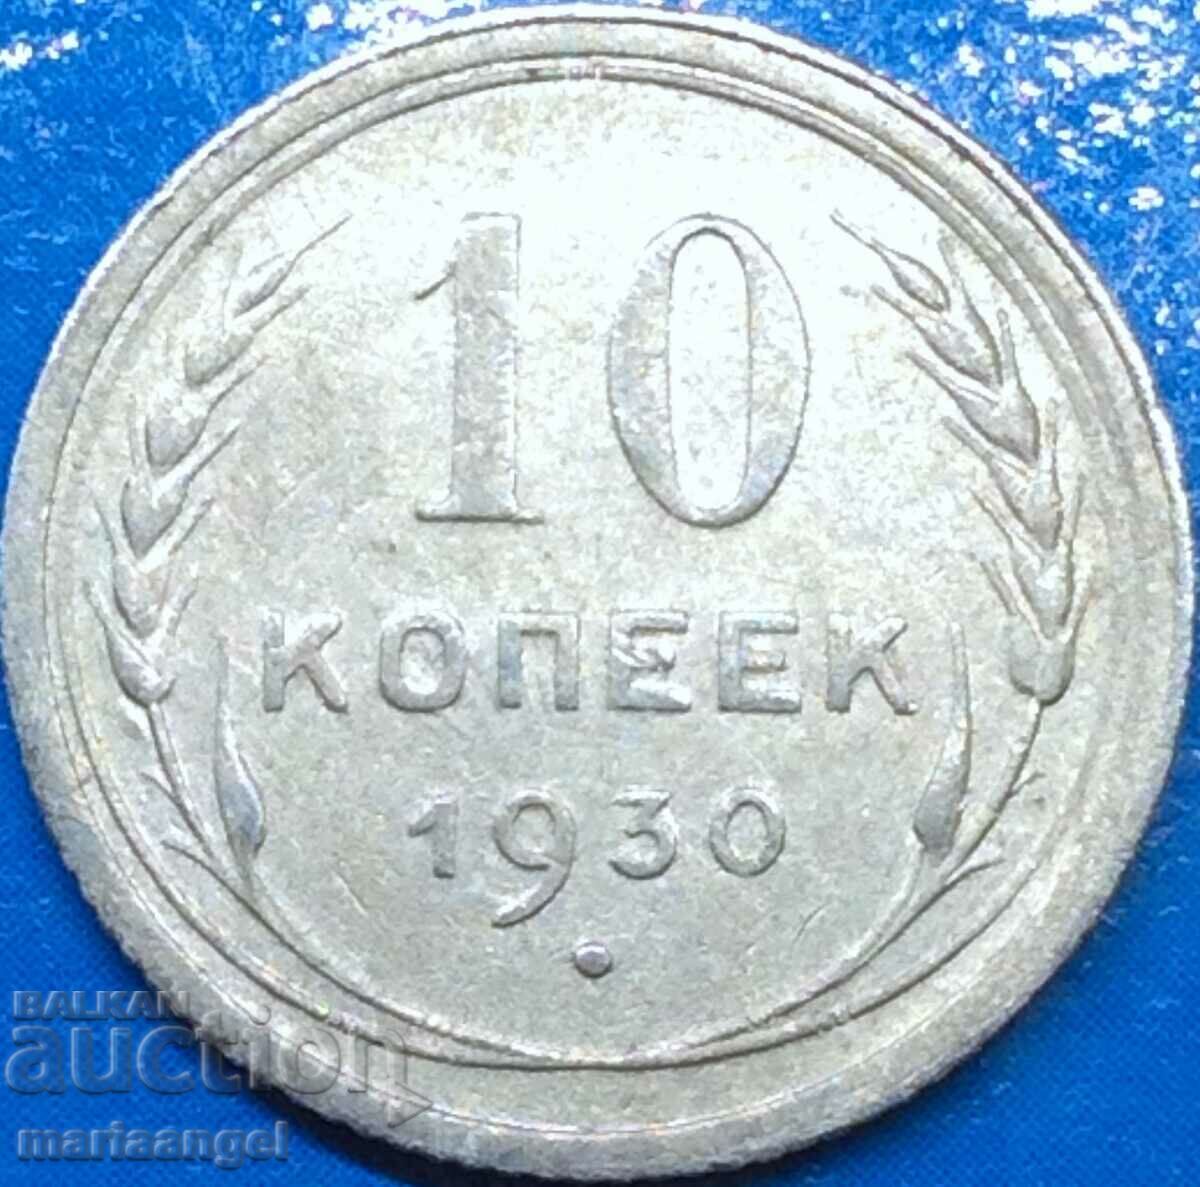 10 kopecks 1930 Russia USSR silver